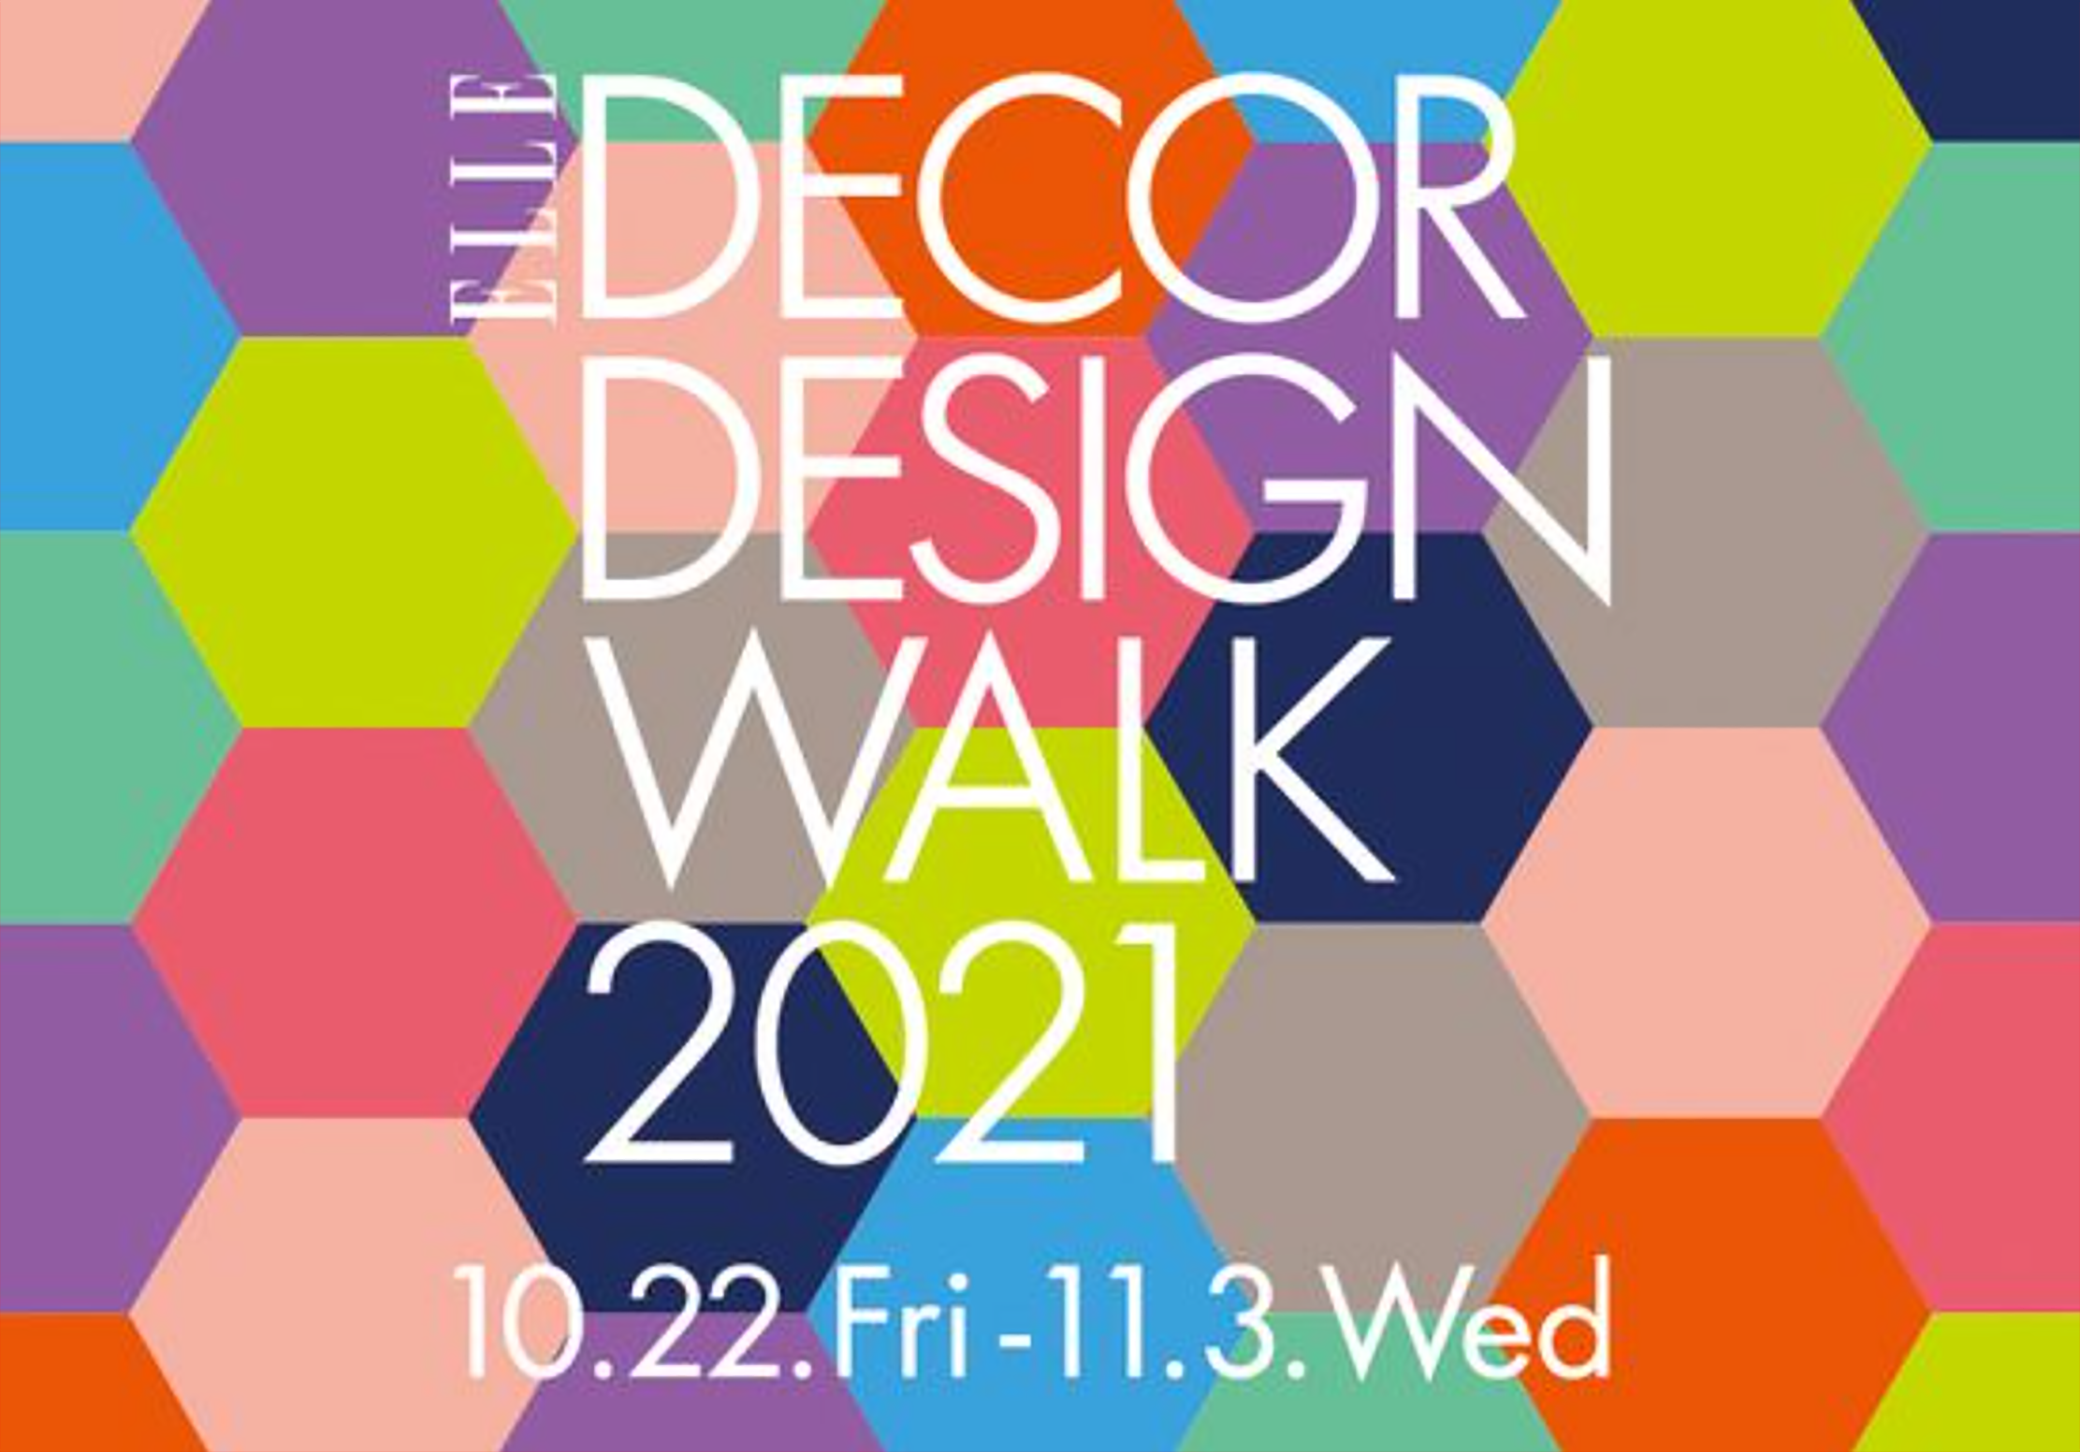 From October 22 (Friday), ELLE DÉCOR DESIGN WALK 2021 will begin!